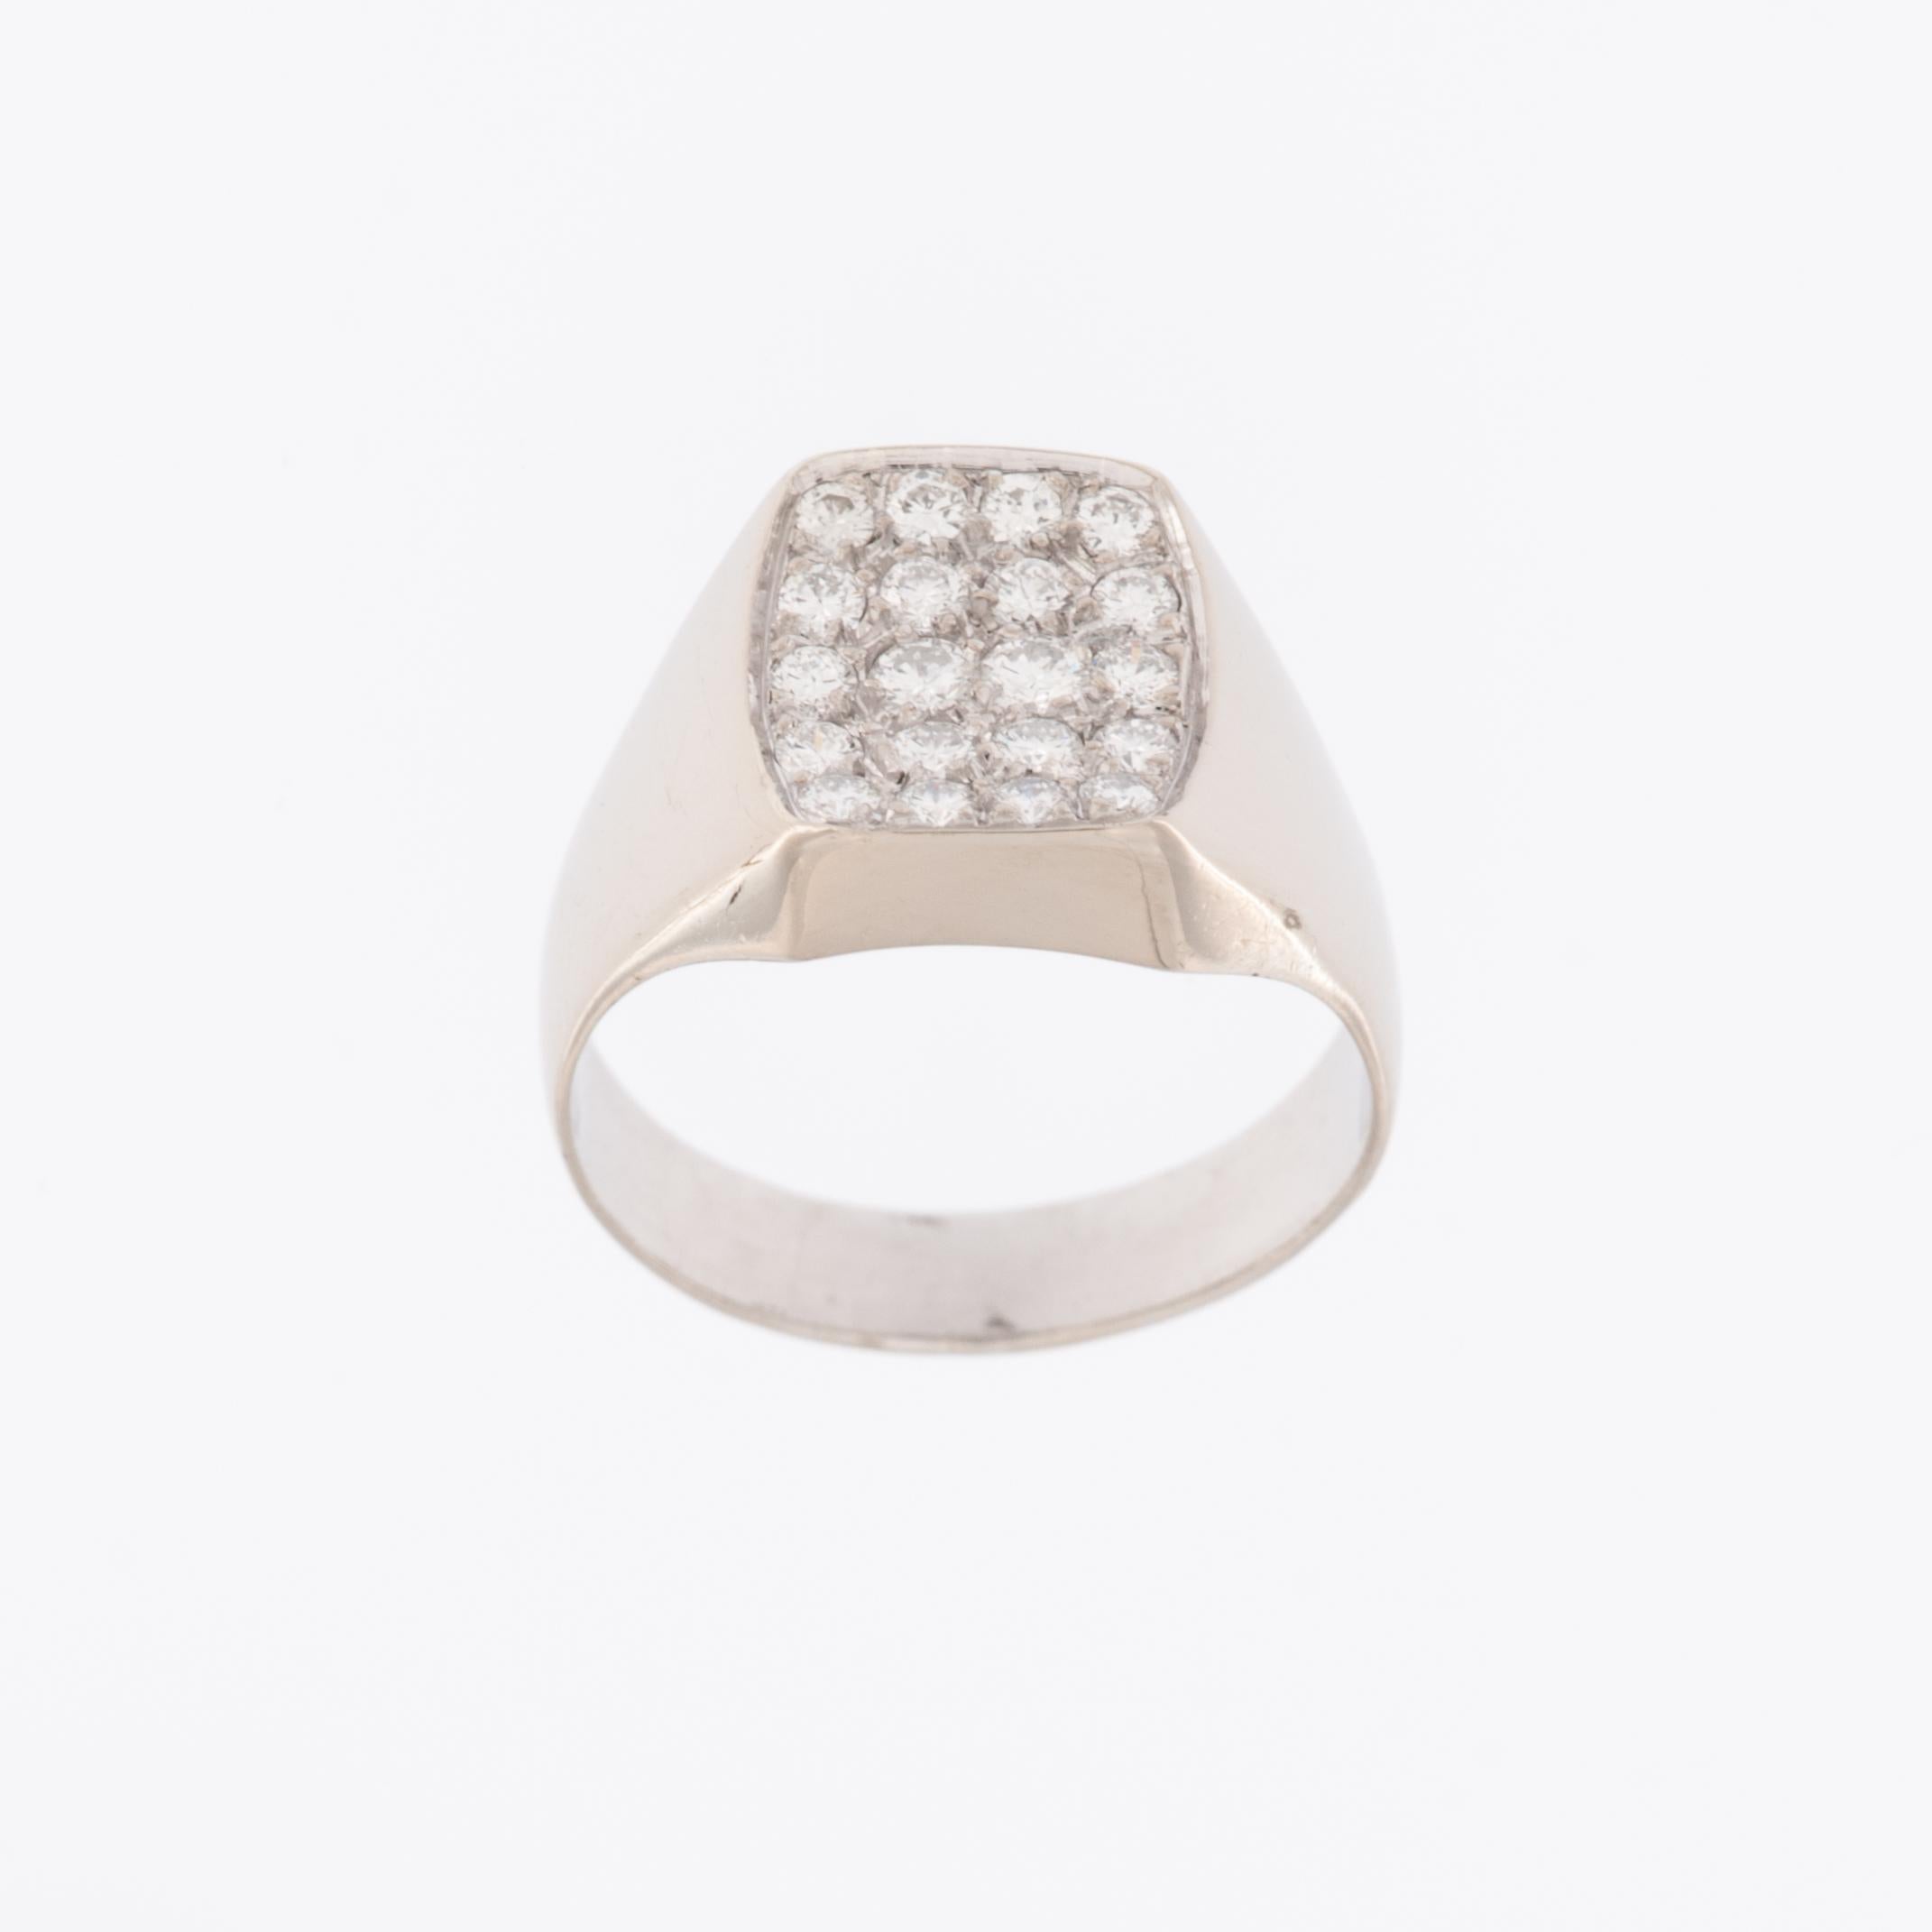 Der German 18kt White Gold Signet Ring mit Diamanten ist ein luxuriöses und stilvolles Schmuckstück, das die klassische Eleganz von Weißgold mit der funkelnden Schönheit von Diamanten verbindet. 

Der Ring ist aus 18 Karat Weißgold gefertigt, einem